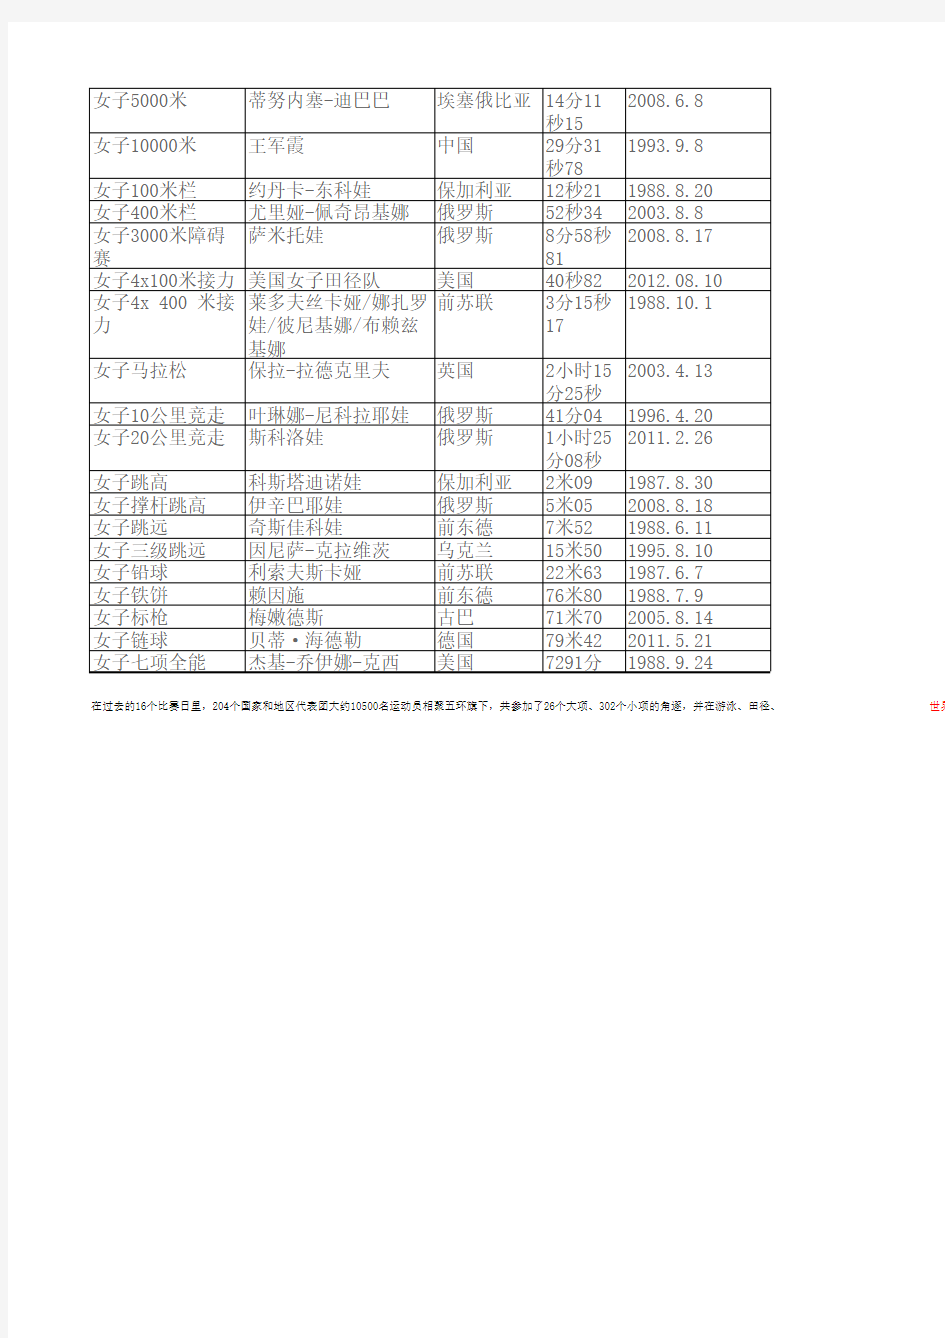 田径世界纪录(截止到2012年8月16日最新统计)